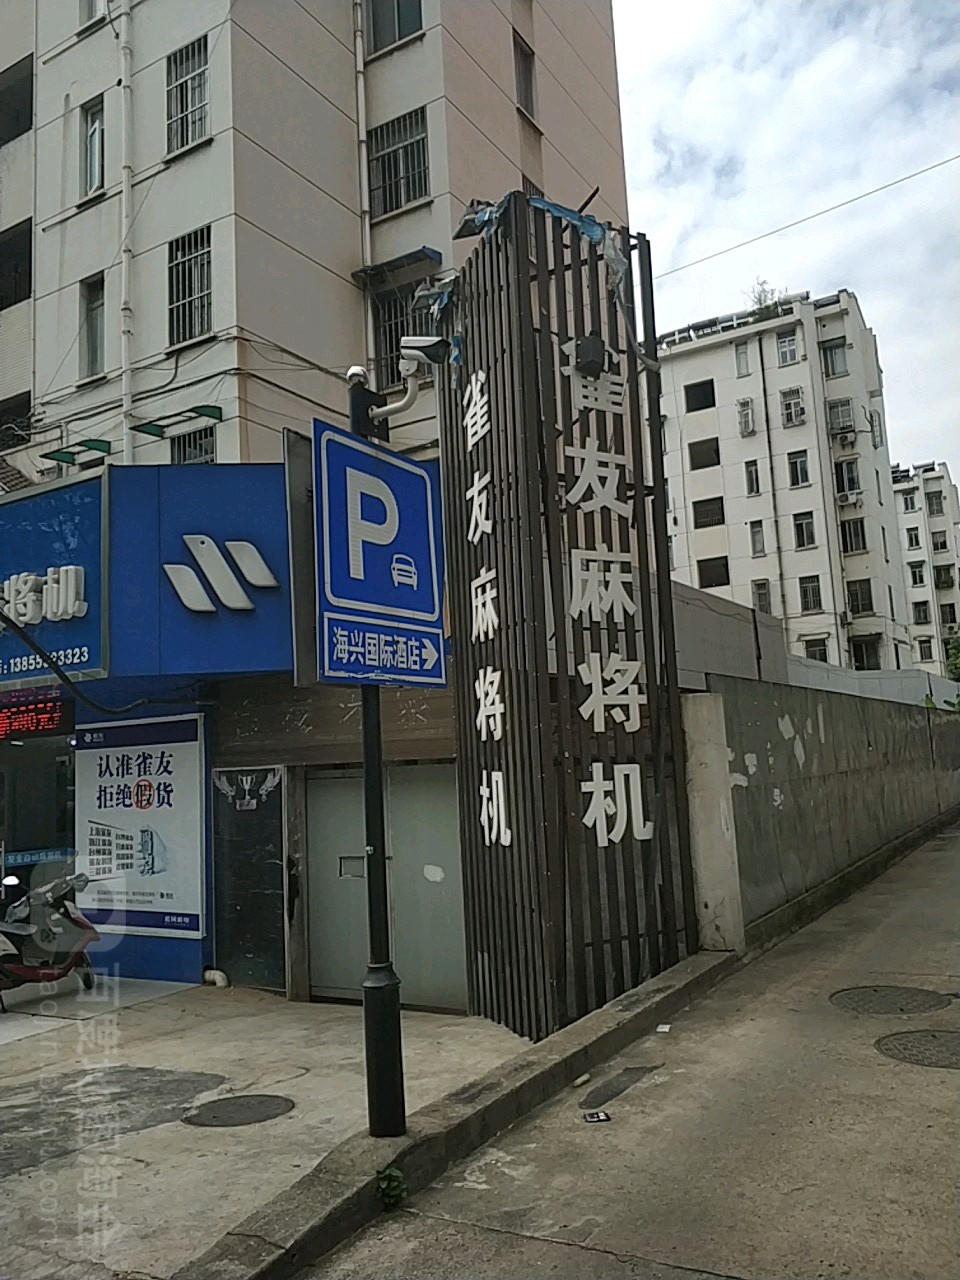 海興國際酒店停車場